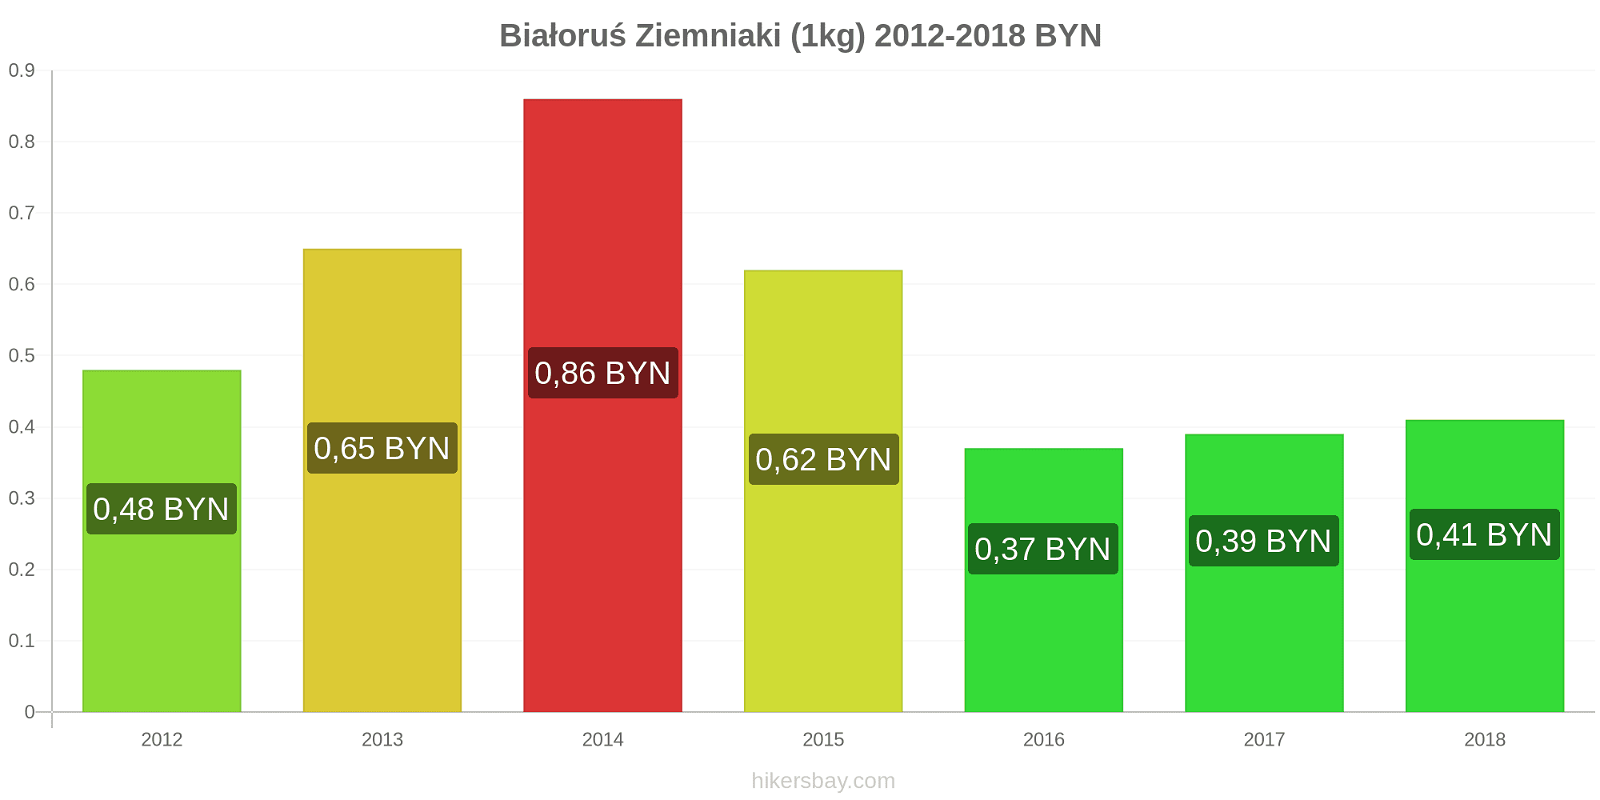 Białoruś zmiany cen Ziemniaki (1kg) hikersbay.com